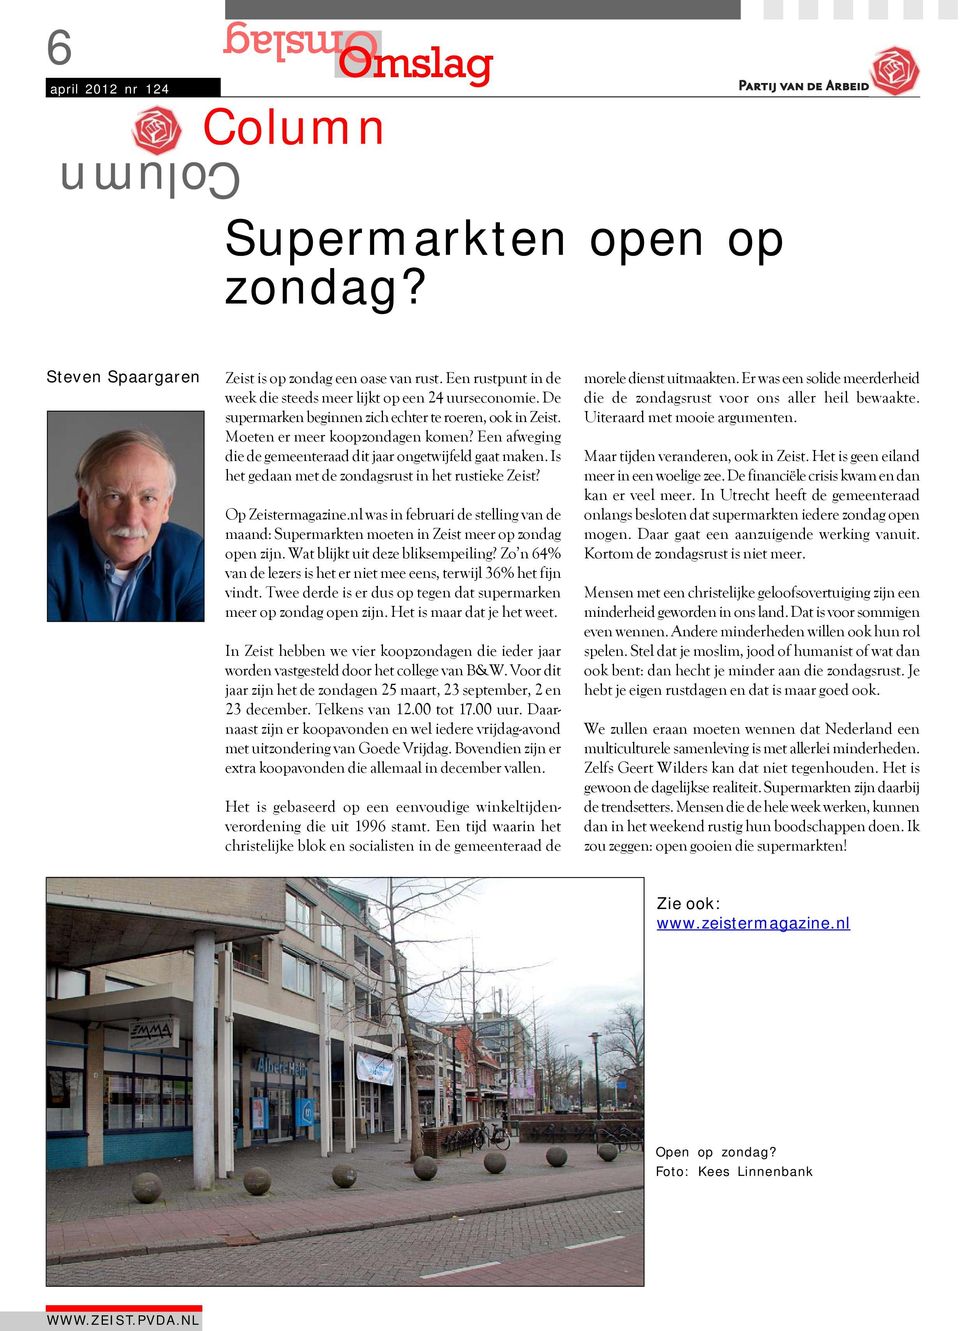 Is het gedaan met de zondagsrust in het rustieke Zeist? Op Zeistermagazine.nl was in februari de stelling van de maand: Supermarkten moeten in Zeist meer op zondag open zijn.